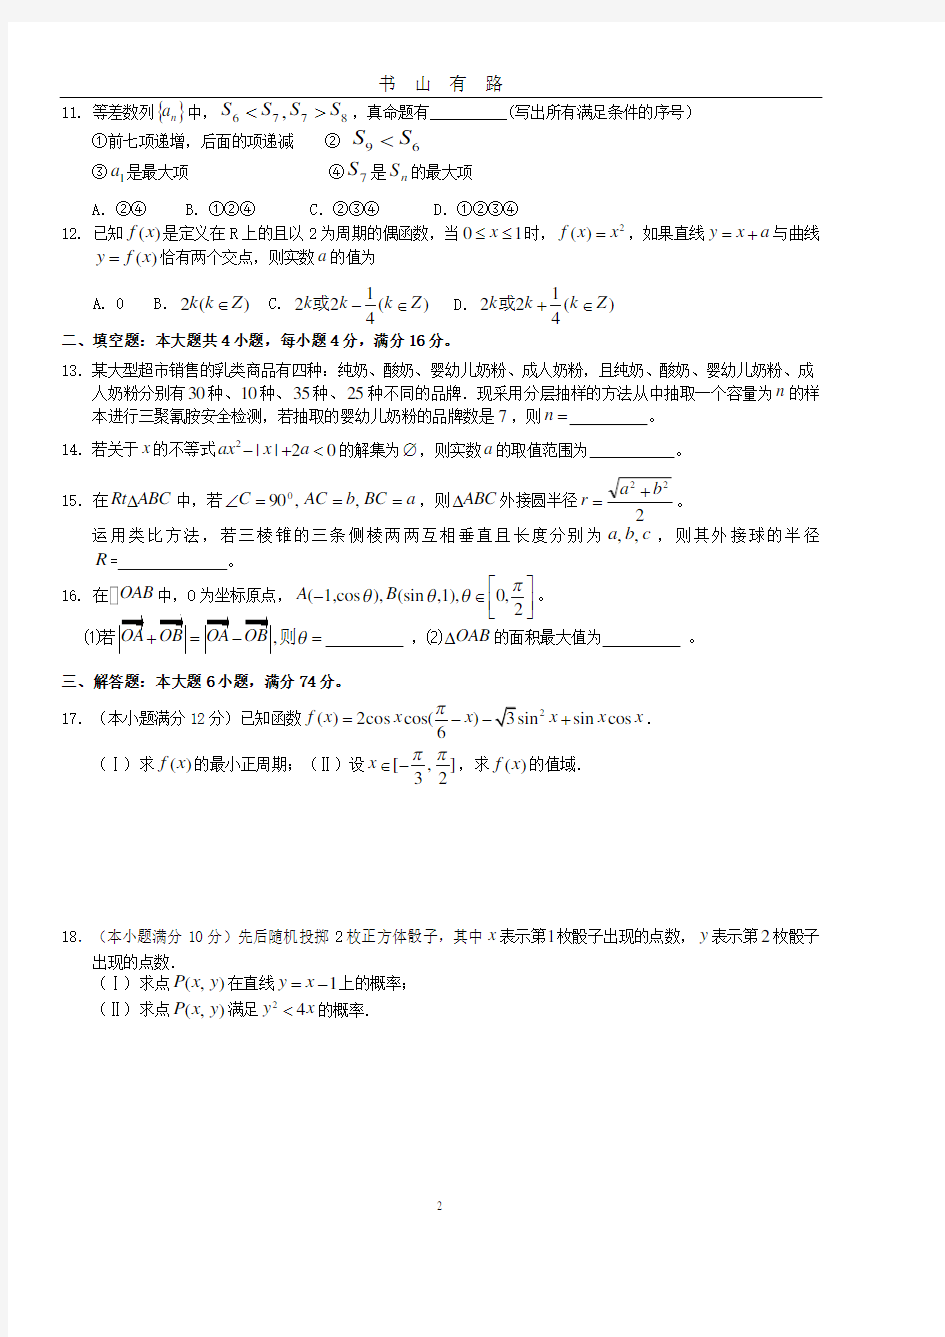 高中文科数学高考模拟试卷(含答案)PDF.pdf